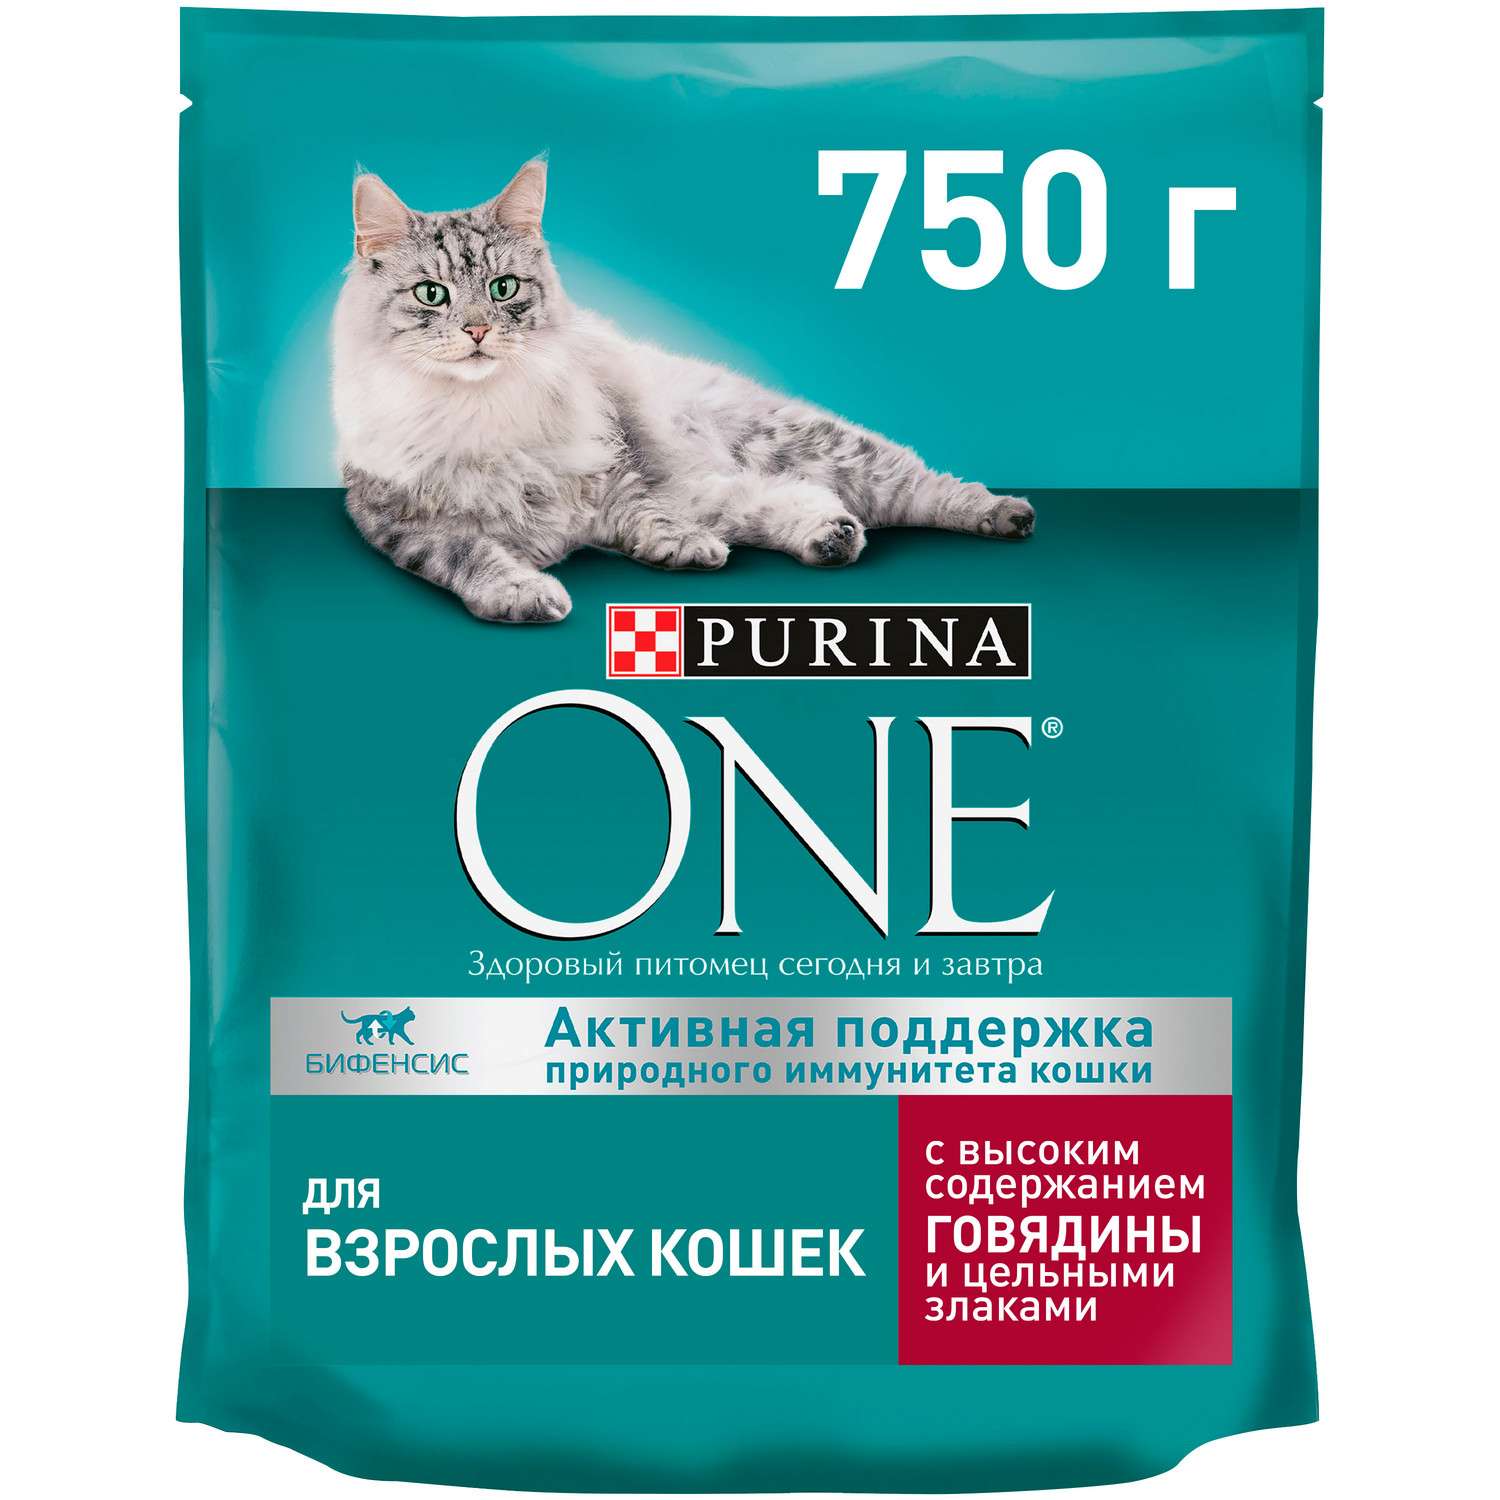 Корм для кошек Purina One с высоким содержанием говядины и цельными злаками сухой 750г - фото 1